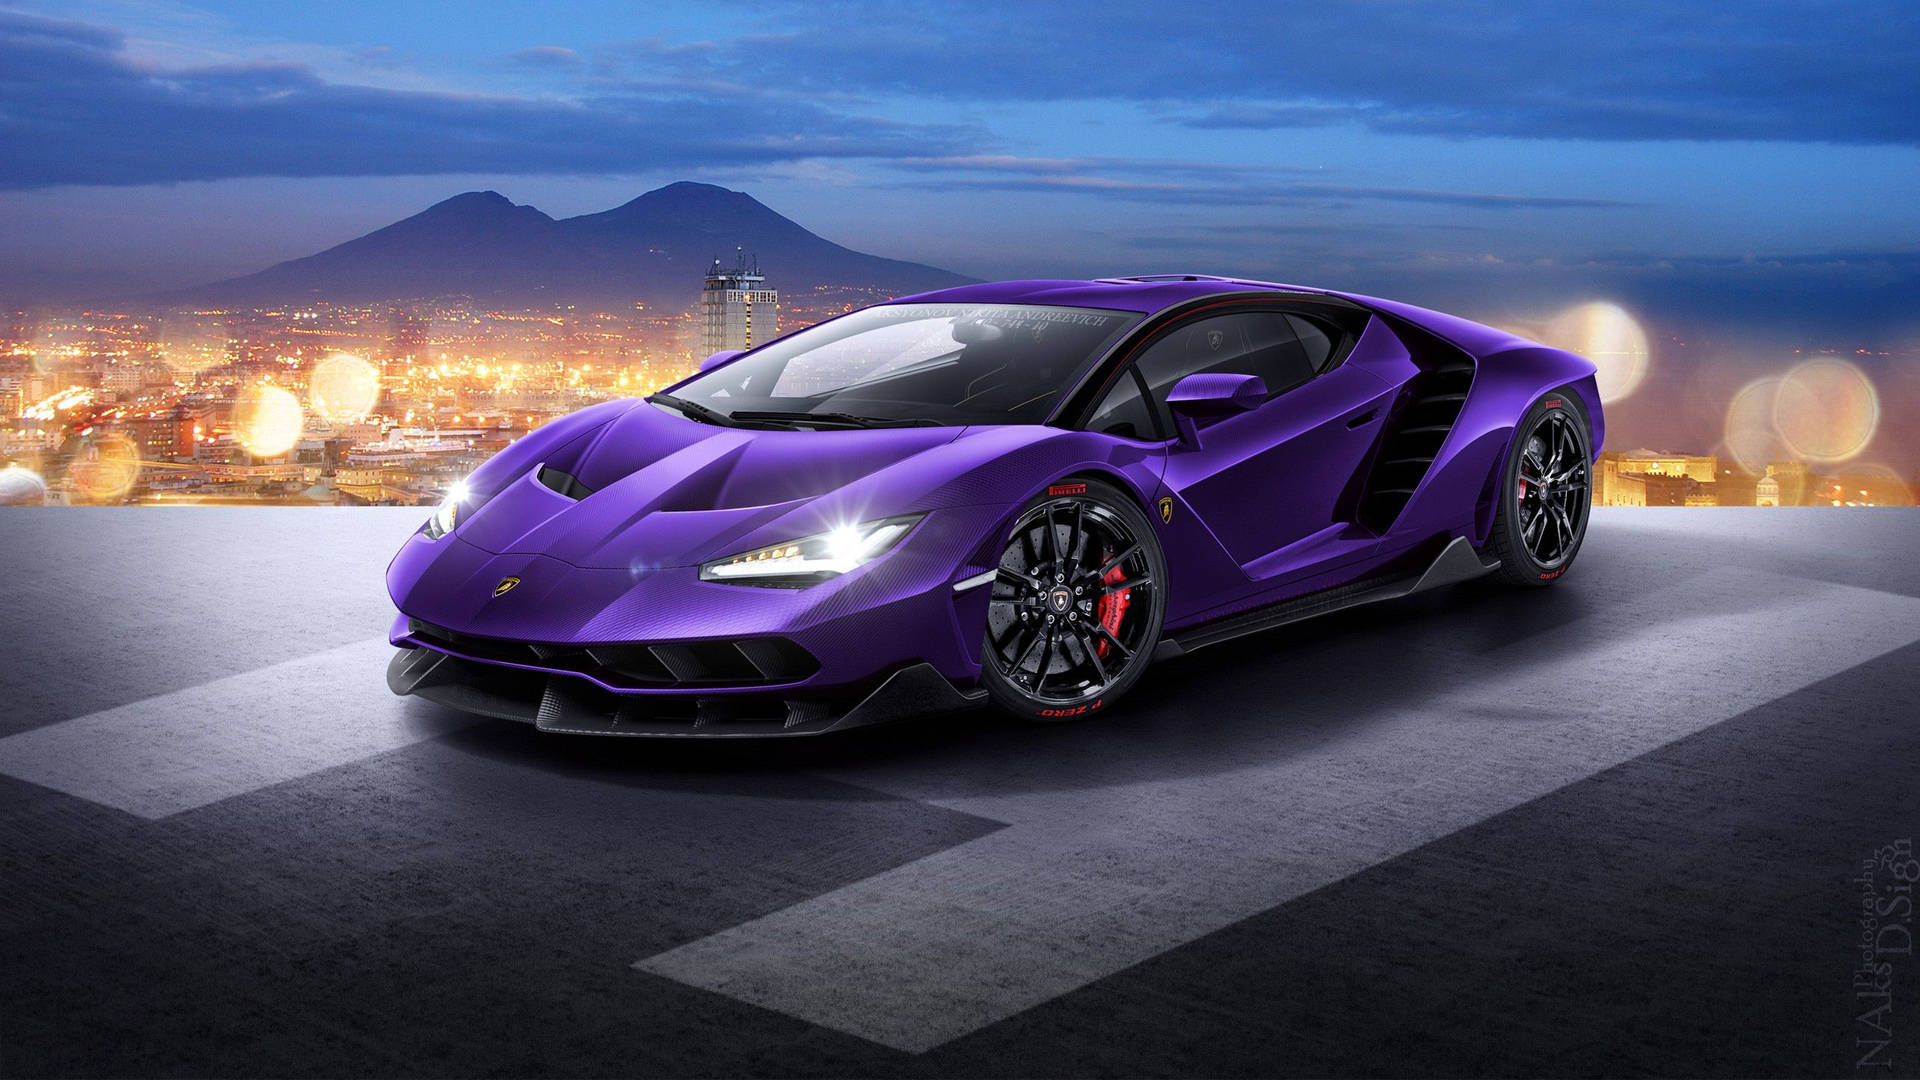 Seje Biler: Violet Lamborghini Wallpaper